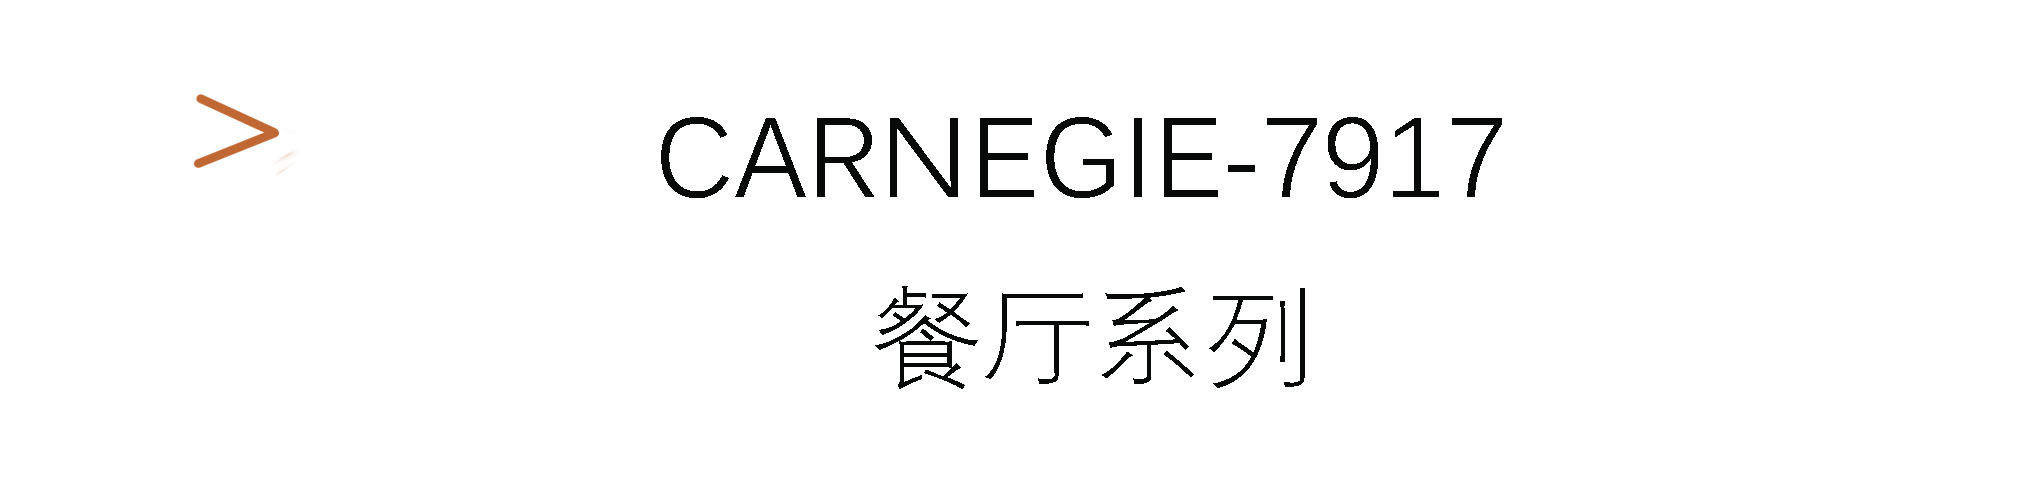 Carnegie-7917